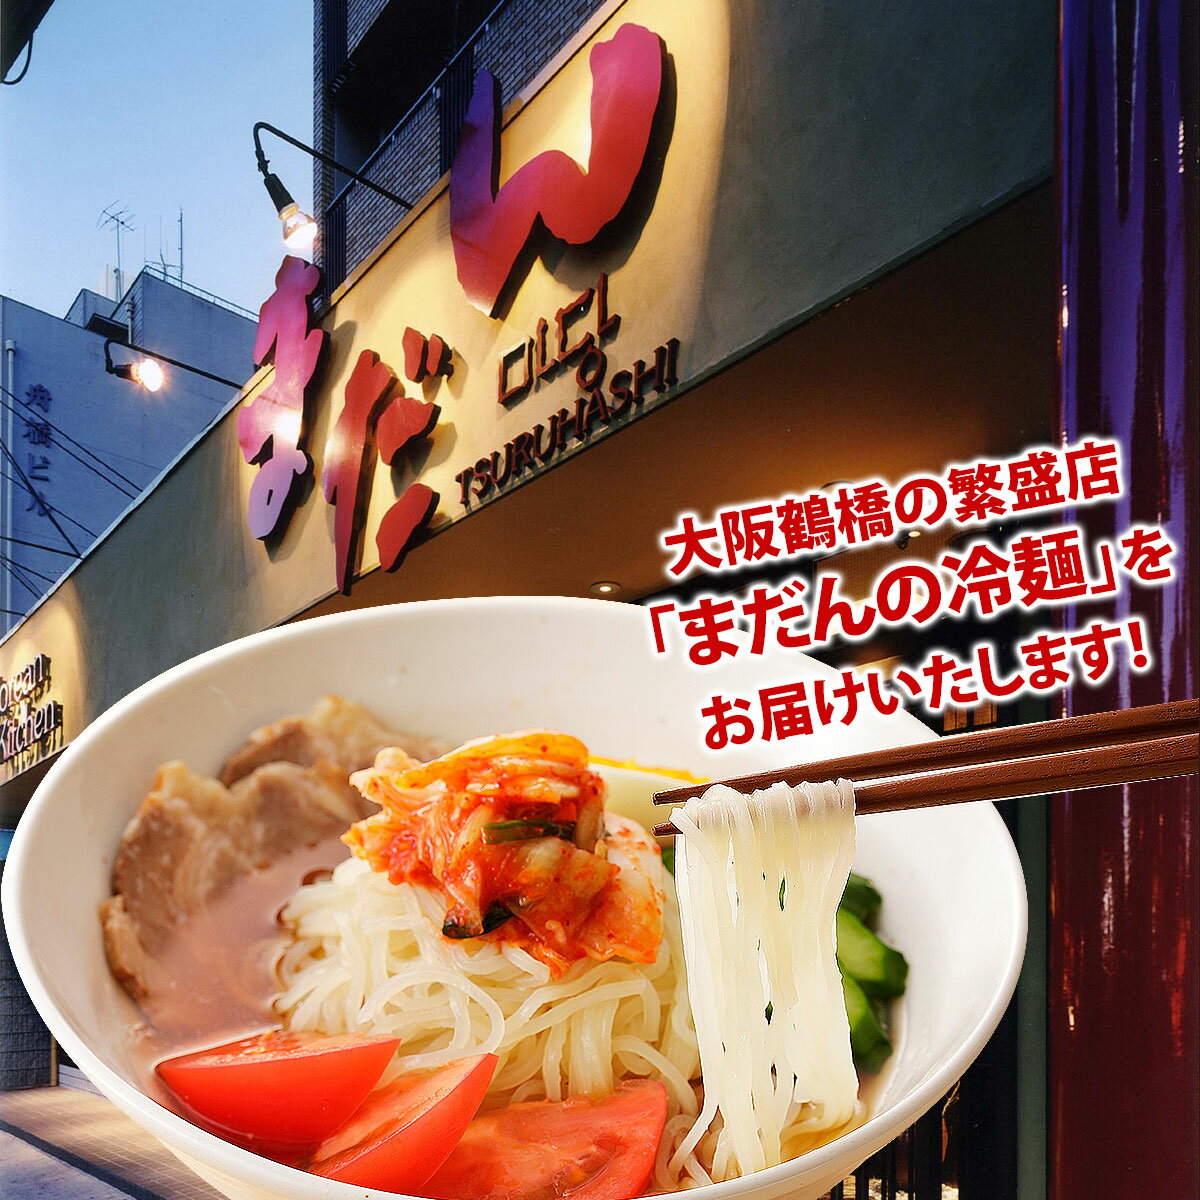 韓国冷麺 大阪鶴橋 まだんの冷麺 2